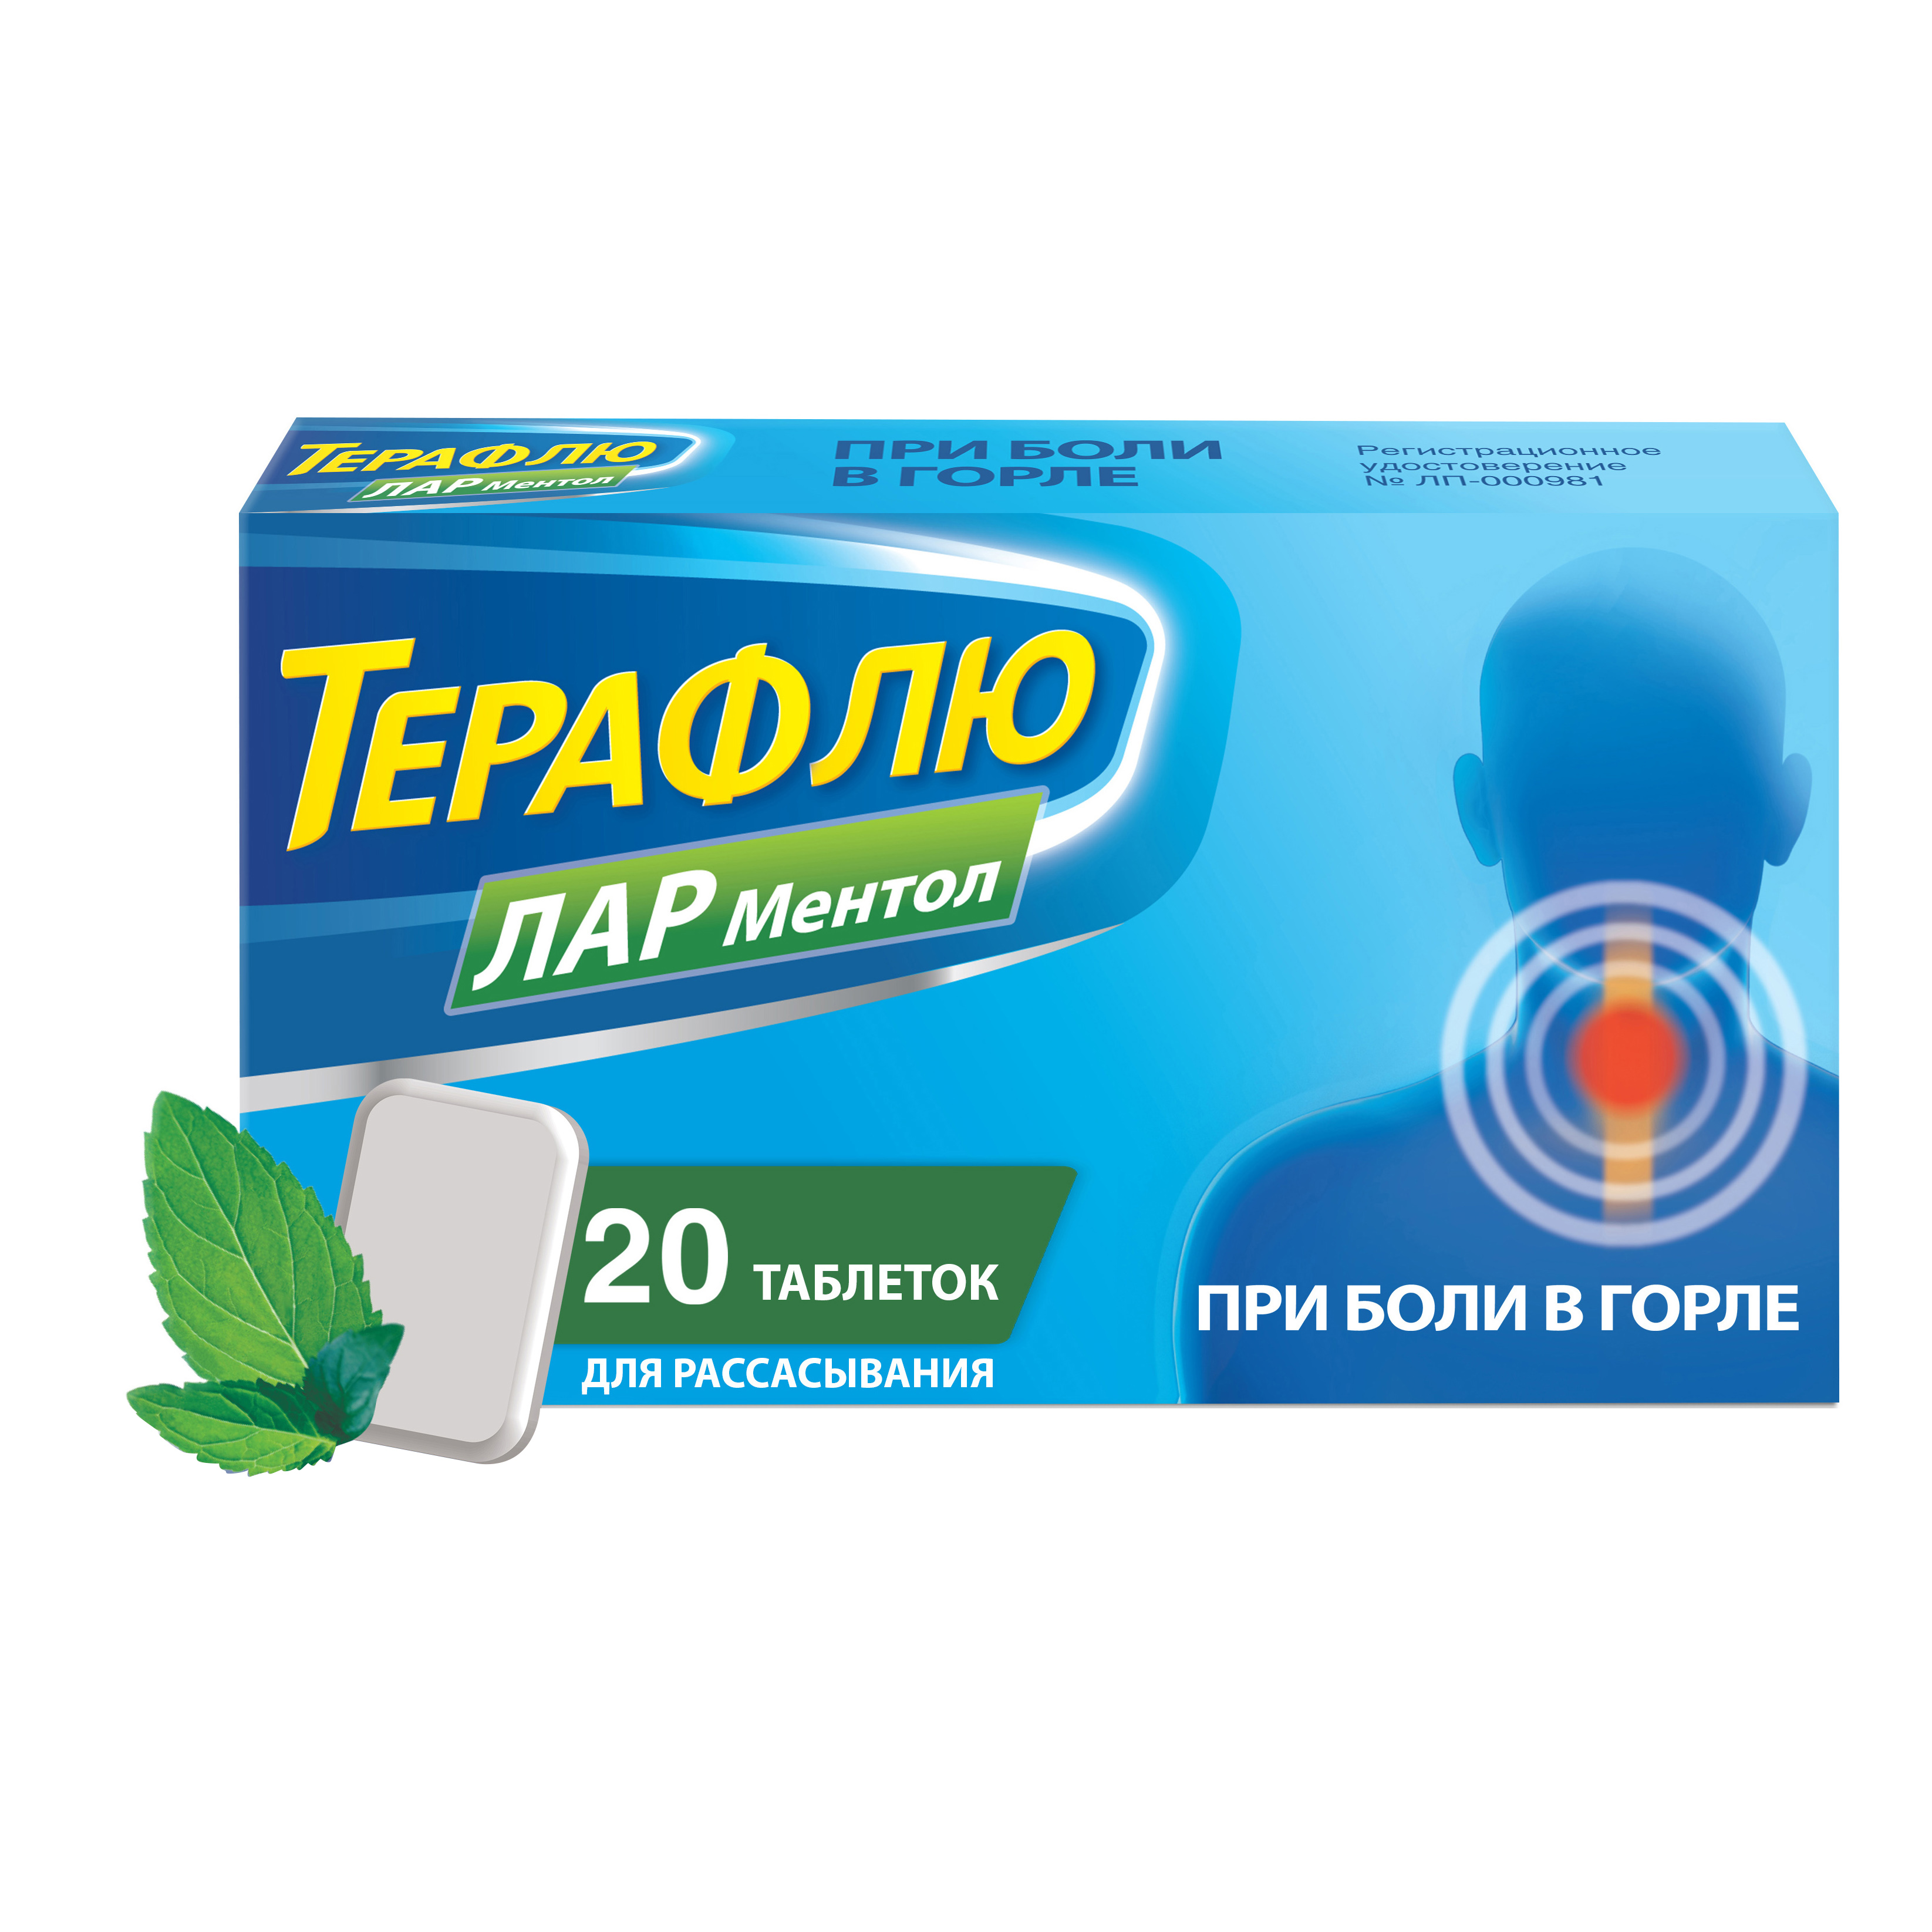 ТераФлю ЛАР таблетки для рассасывания со вкусом ментола 20 шт.